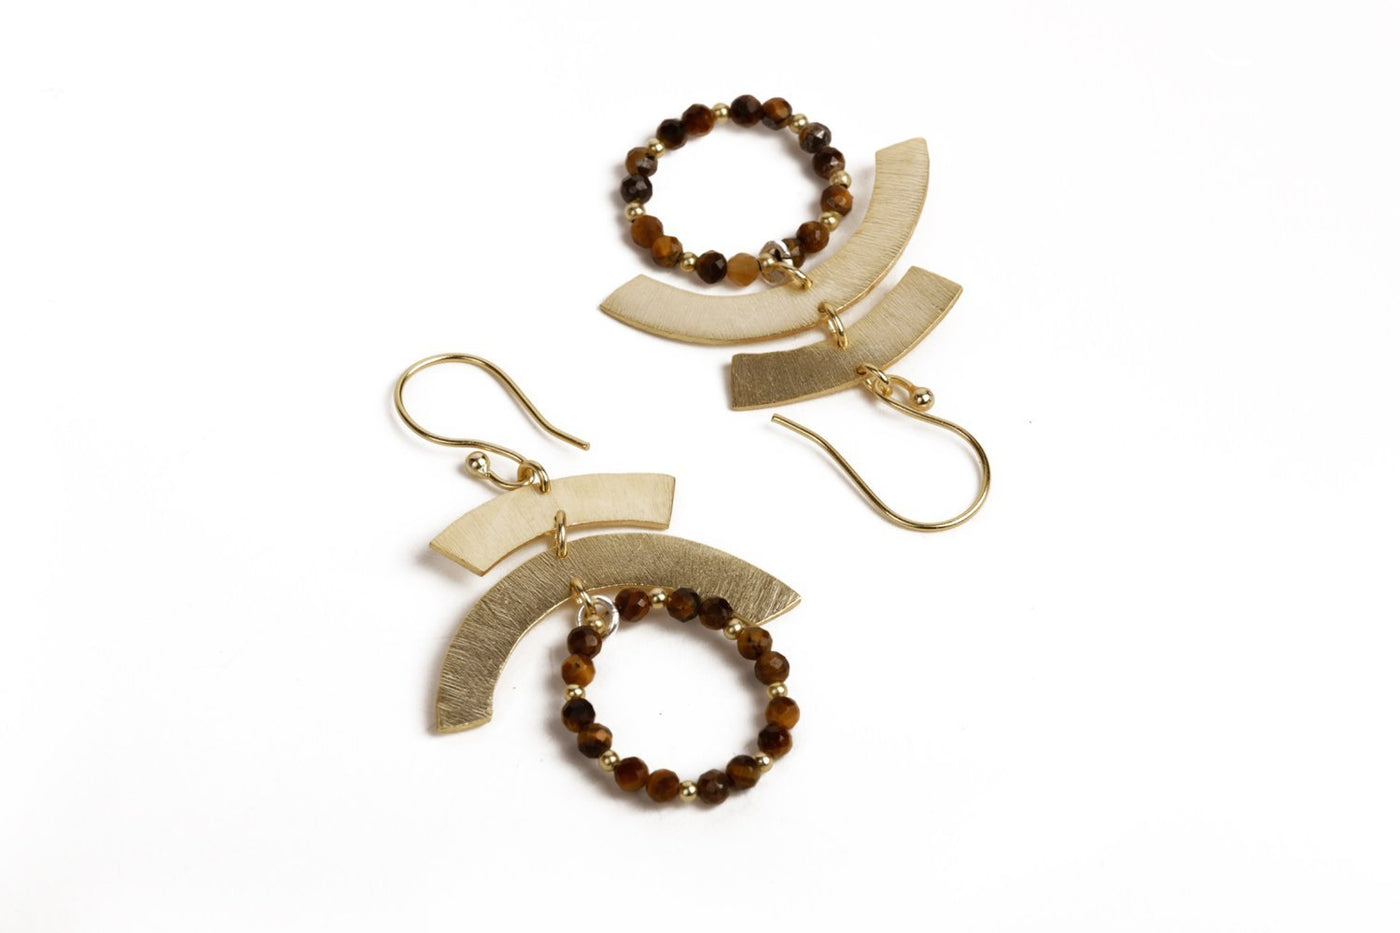 Rich Gold Stone Earrings - Stilskii